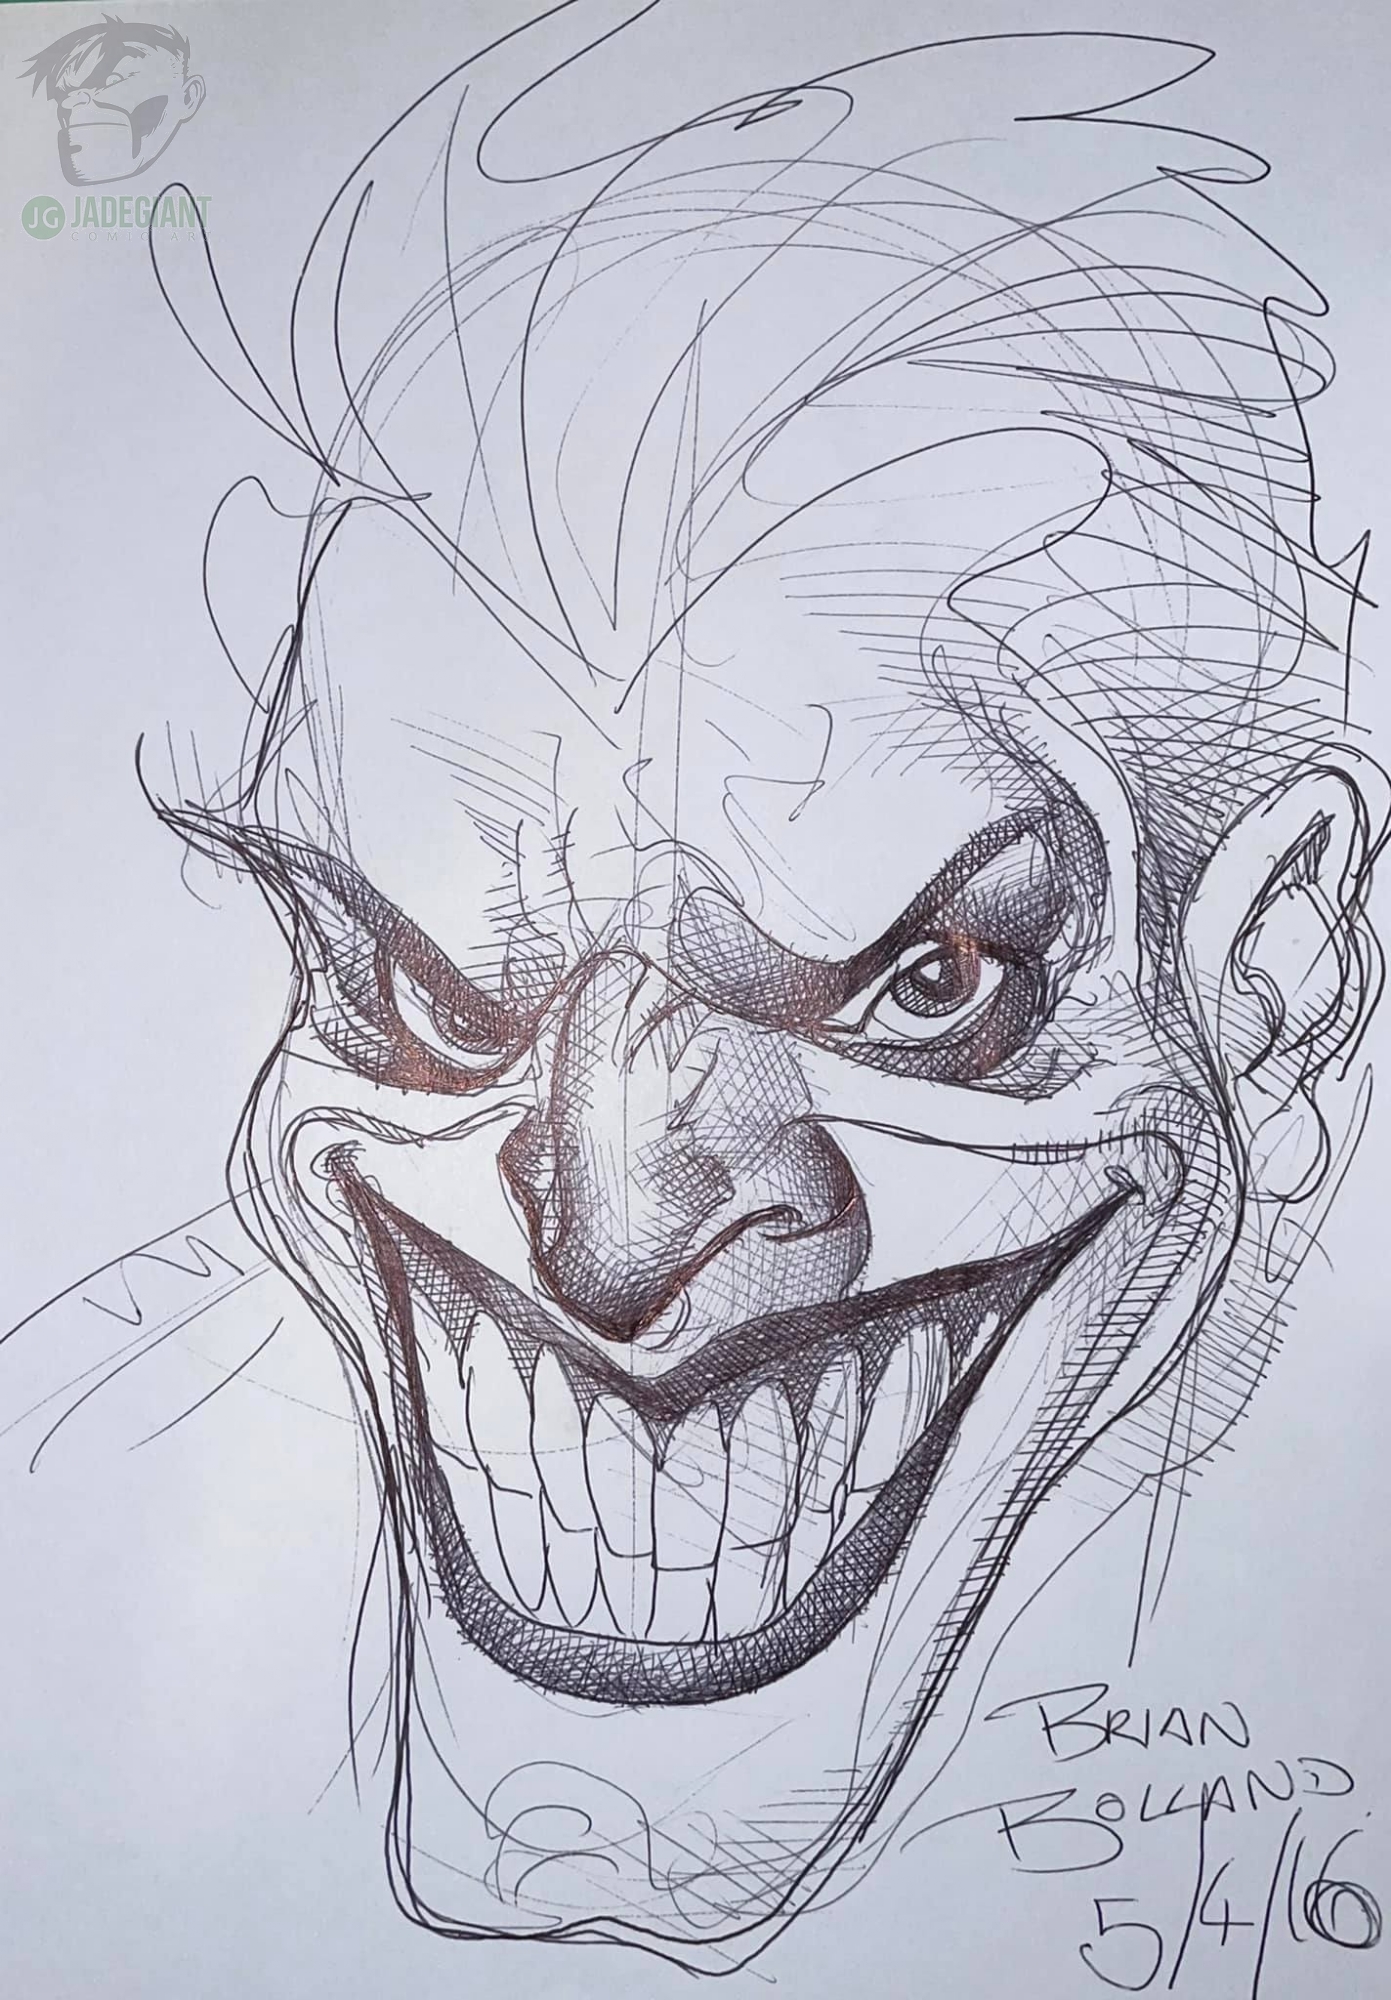 The Joker by Brian Bolland Comic Art